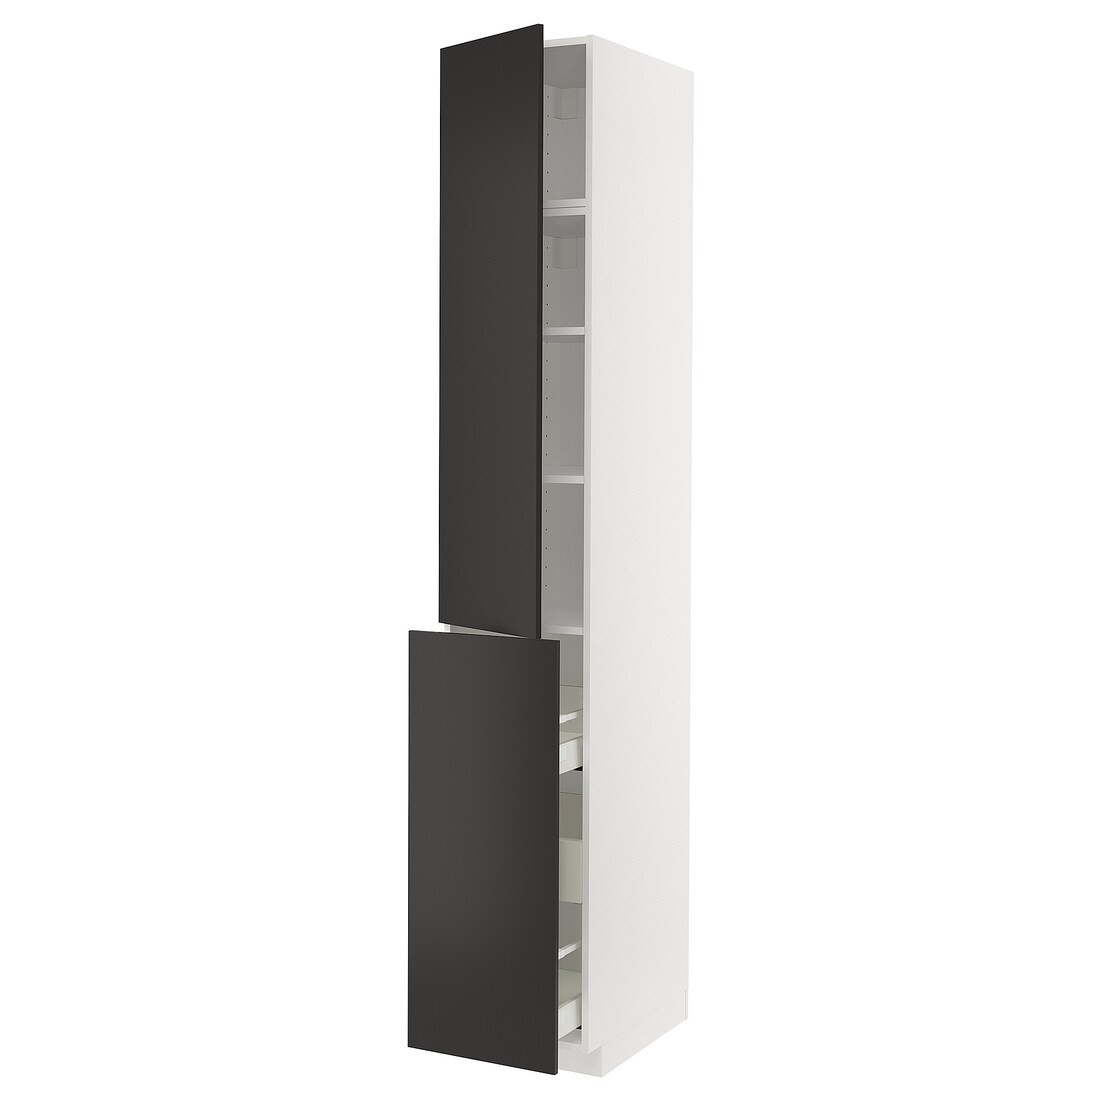 IKEA METOD МЕТОД / MAXIMERA МАКСИМЕРА Высокий шкаф 3 ящика / 1 дверь / 2 полки, белый / Nickebo матовый антрацит, 40x60x240 см 09498712 | 094.987.12